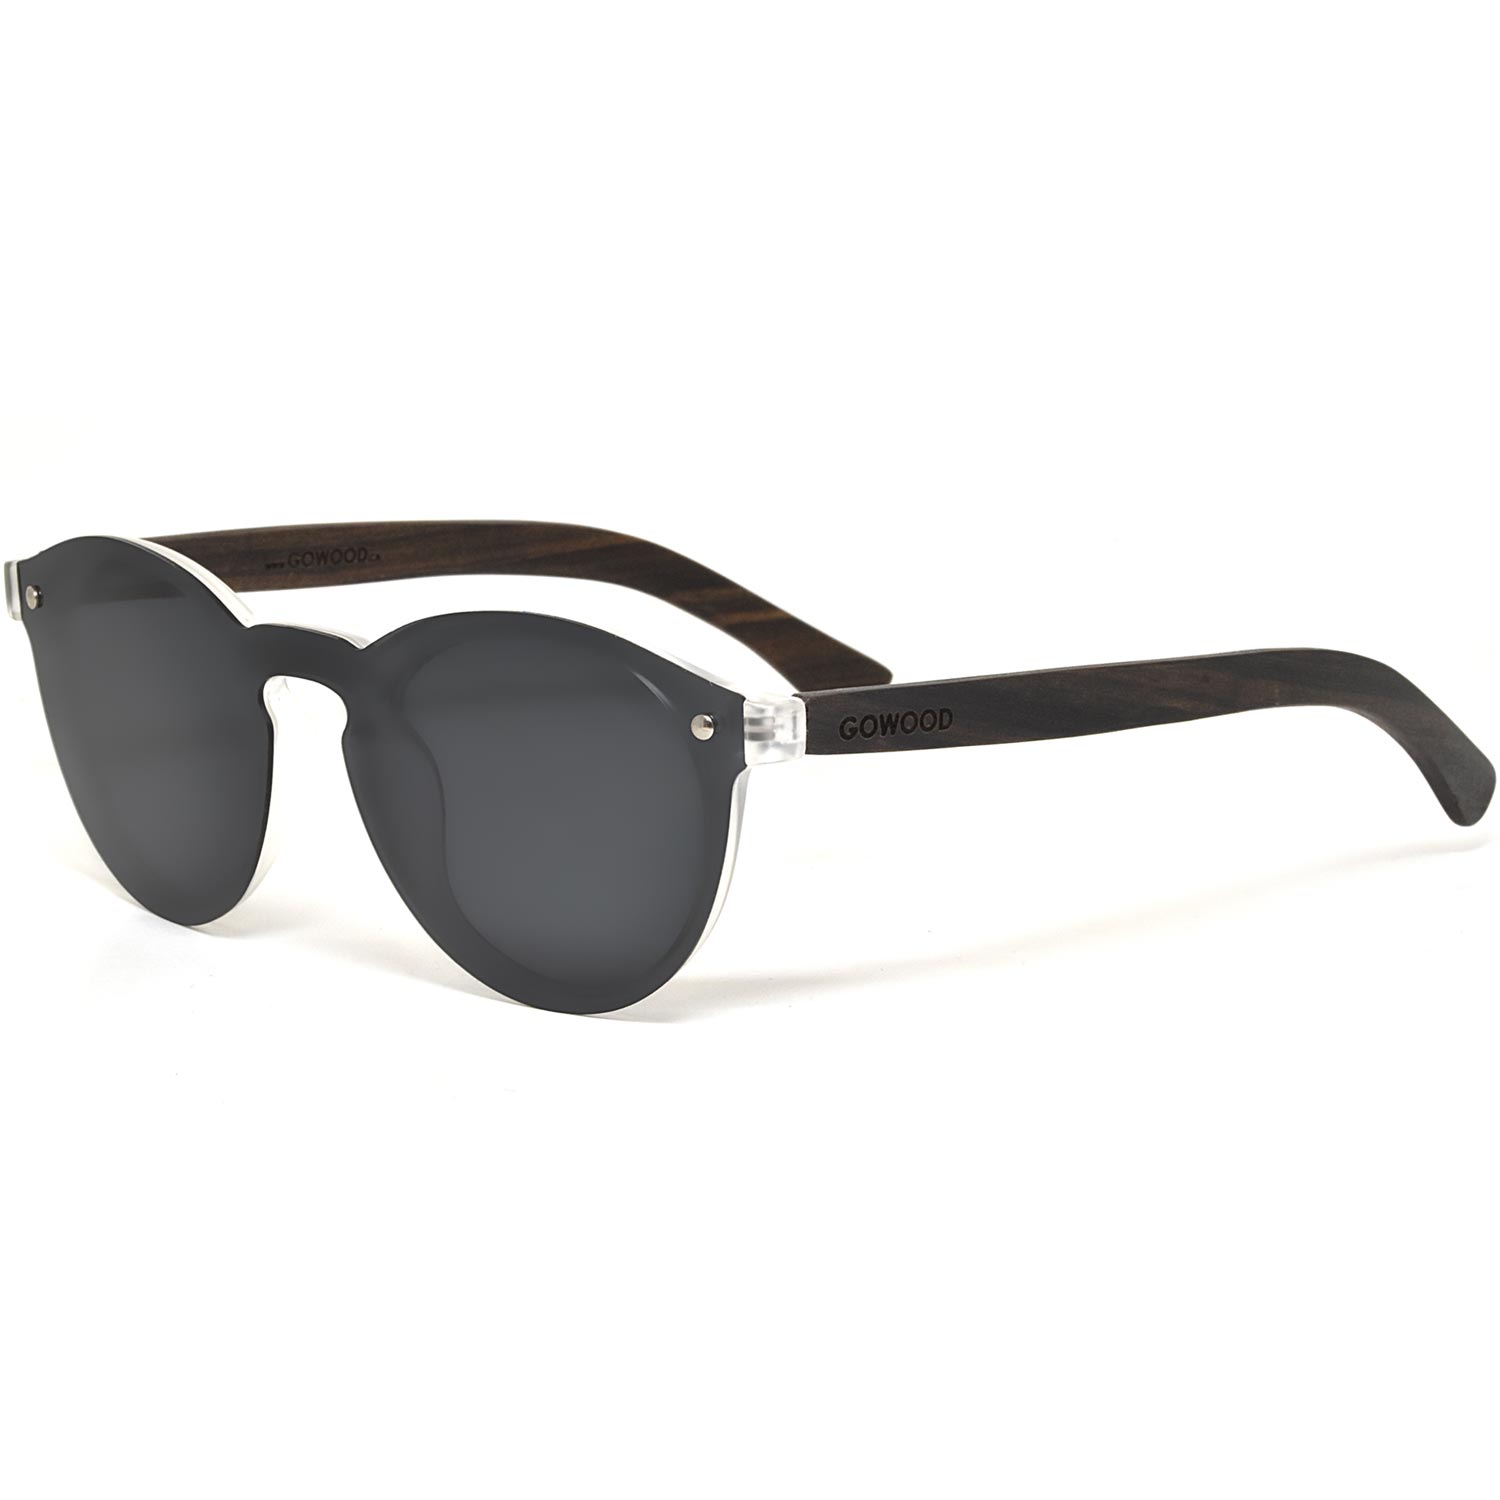 Round ebony wood sunglasses with special one piece polarized dark grey lens